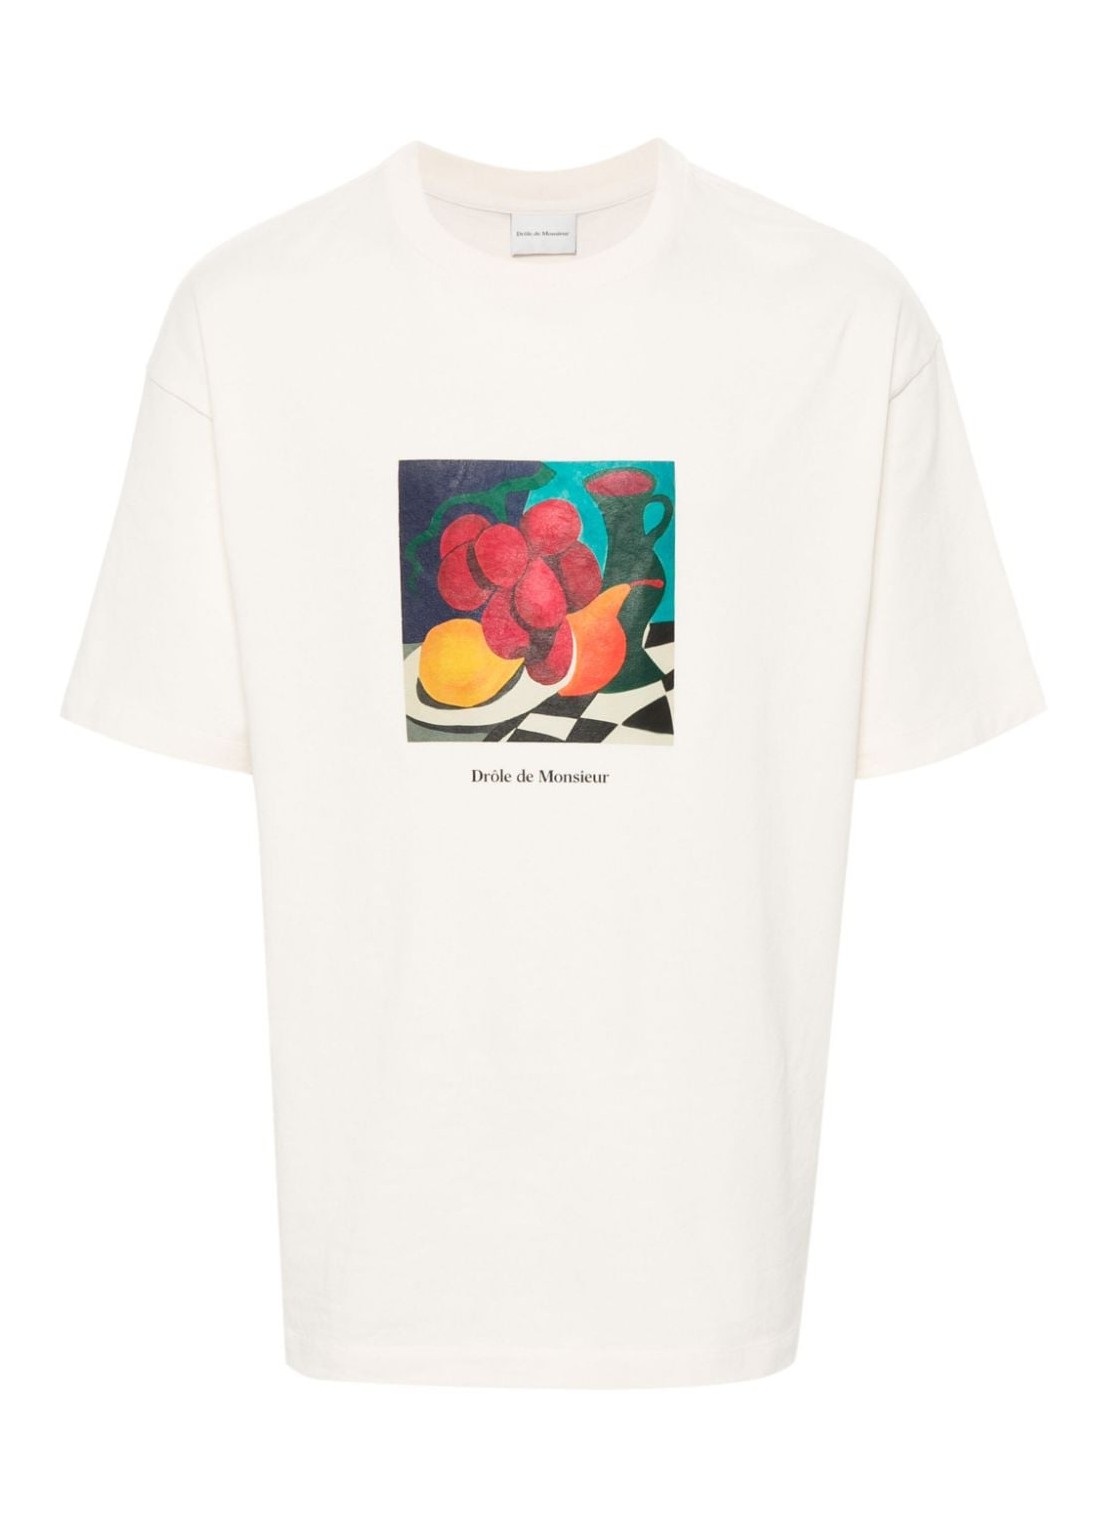 Camiseta drole de monsieur t-shirt manle t-shirt nature morte - dts181co134cm cream talla XL
 